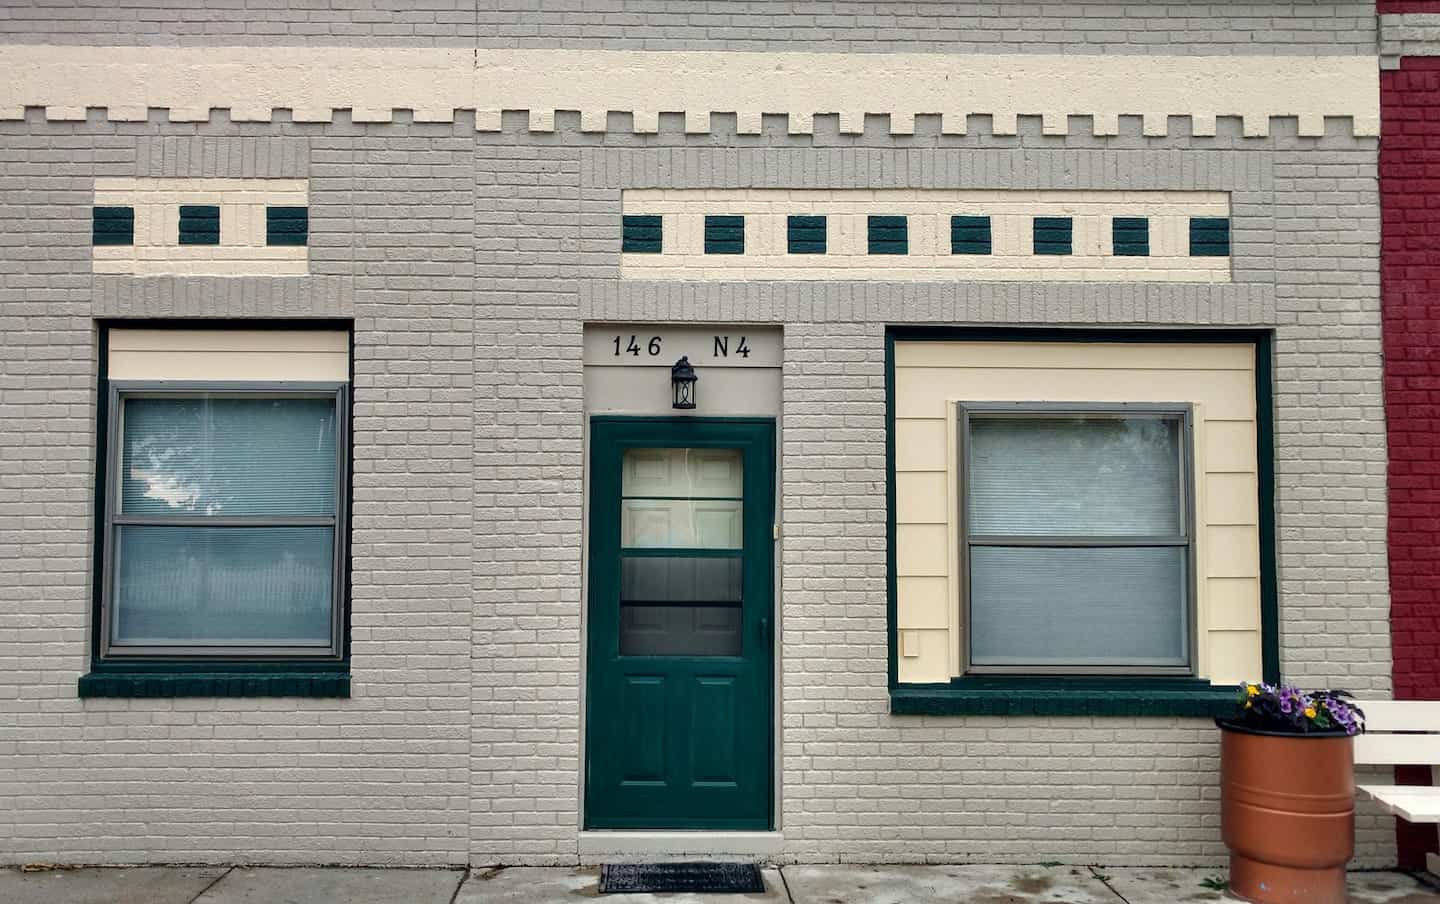 Image of Airbnb rental in Lincoln, Nebraska